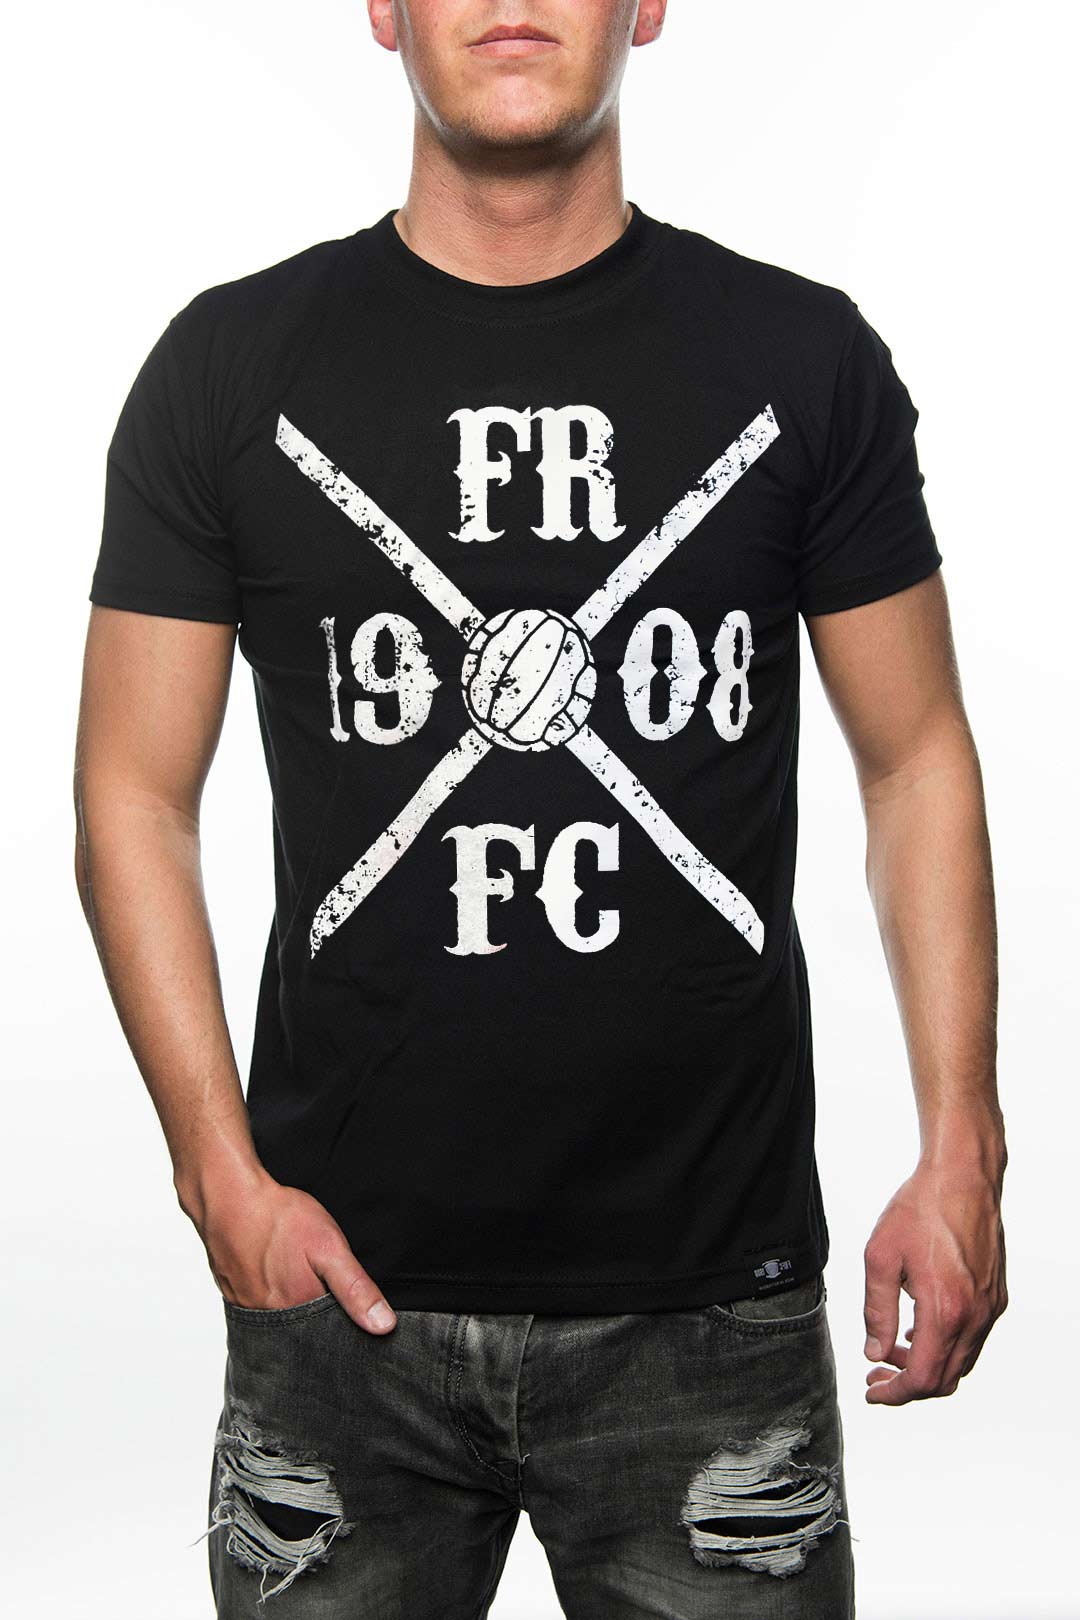 FRFC1908 Kruislogo Shirt